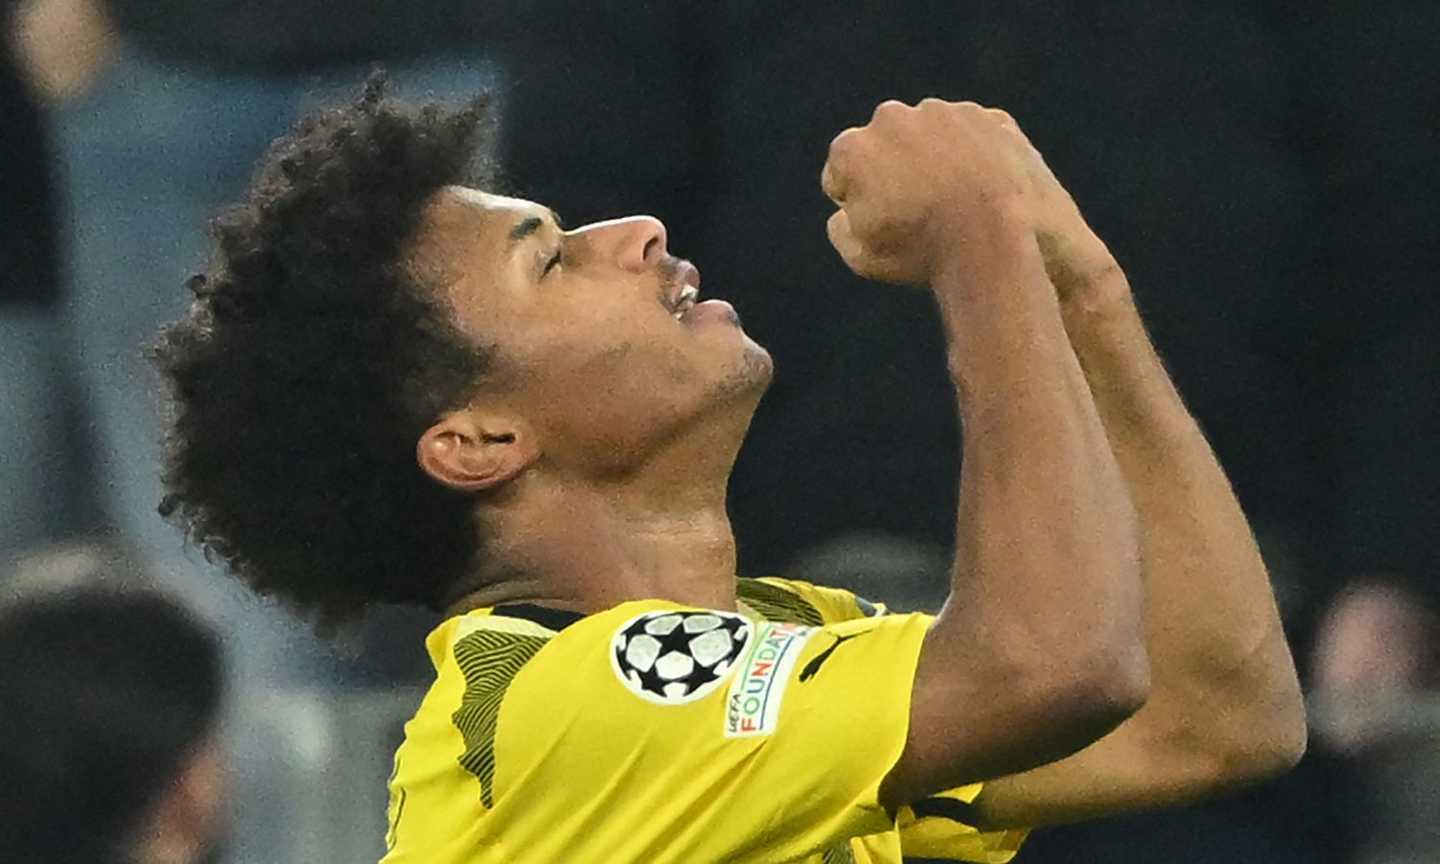 Psg-Borussia Dortmund 0-1, fallisce la rimonta di Luis Enrique: tedeschi in finale di Champions League dopo 11 anni